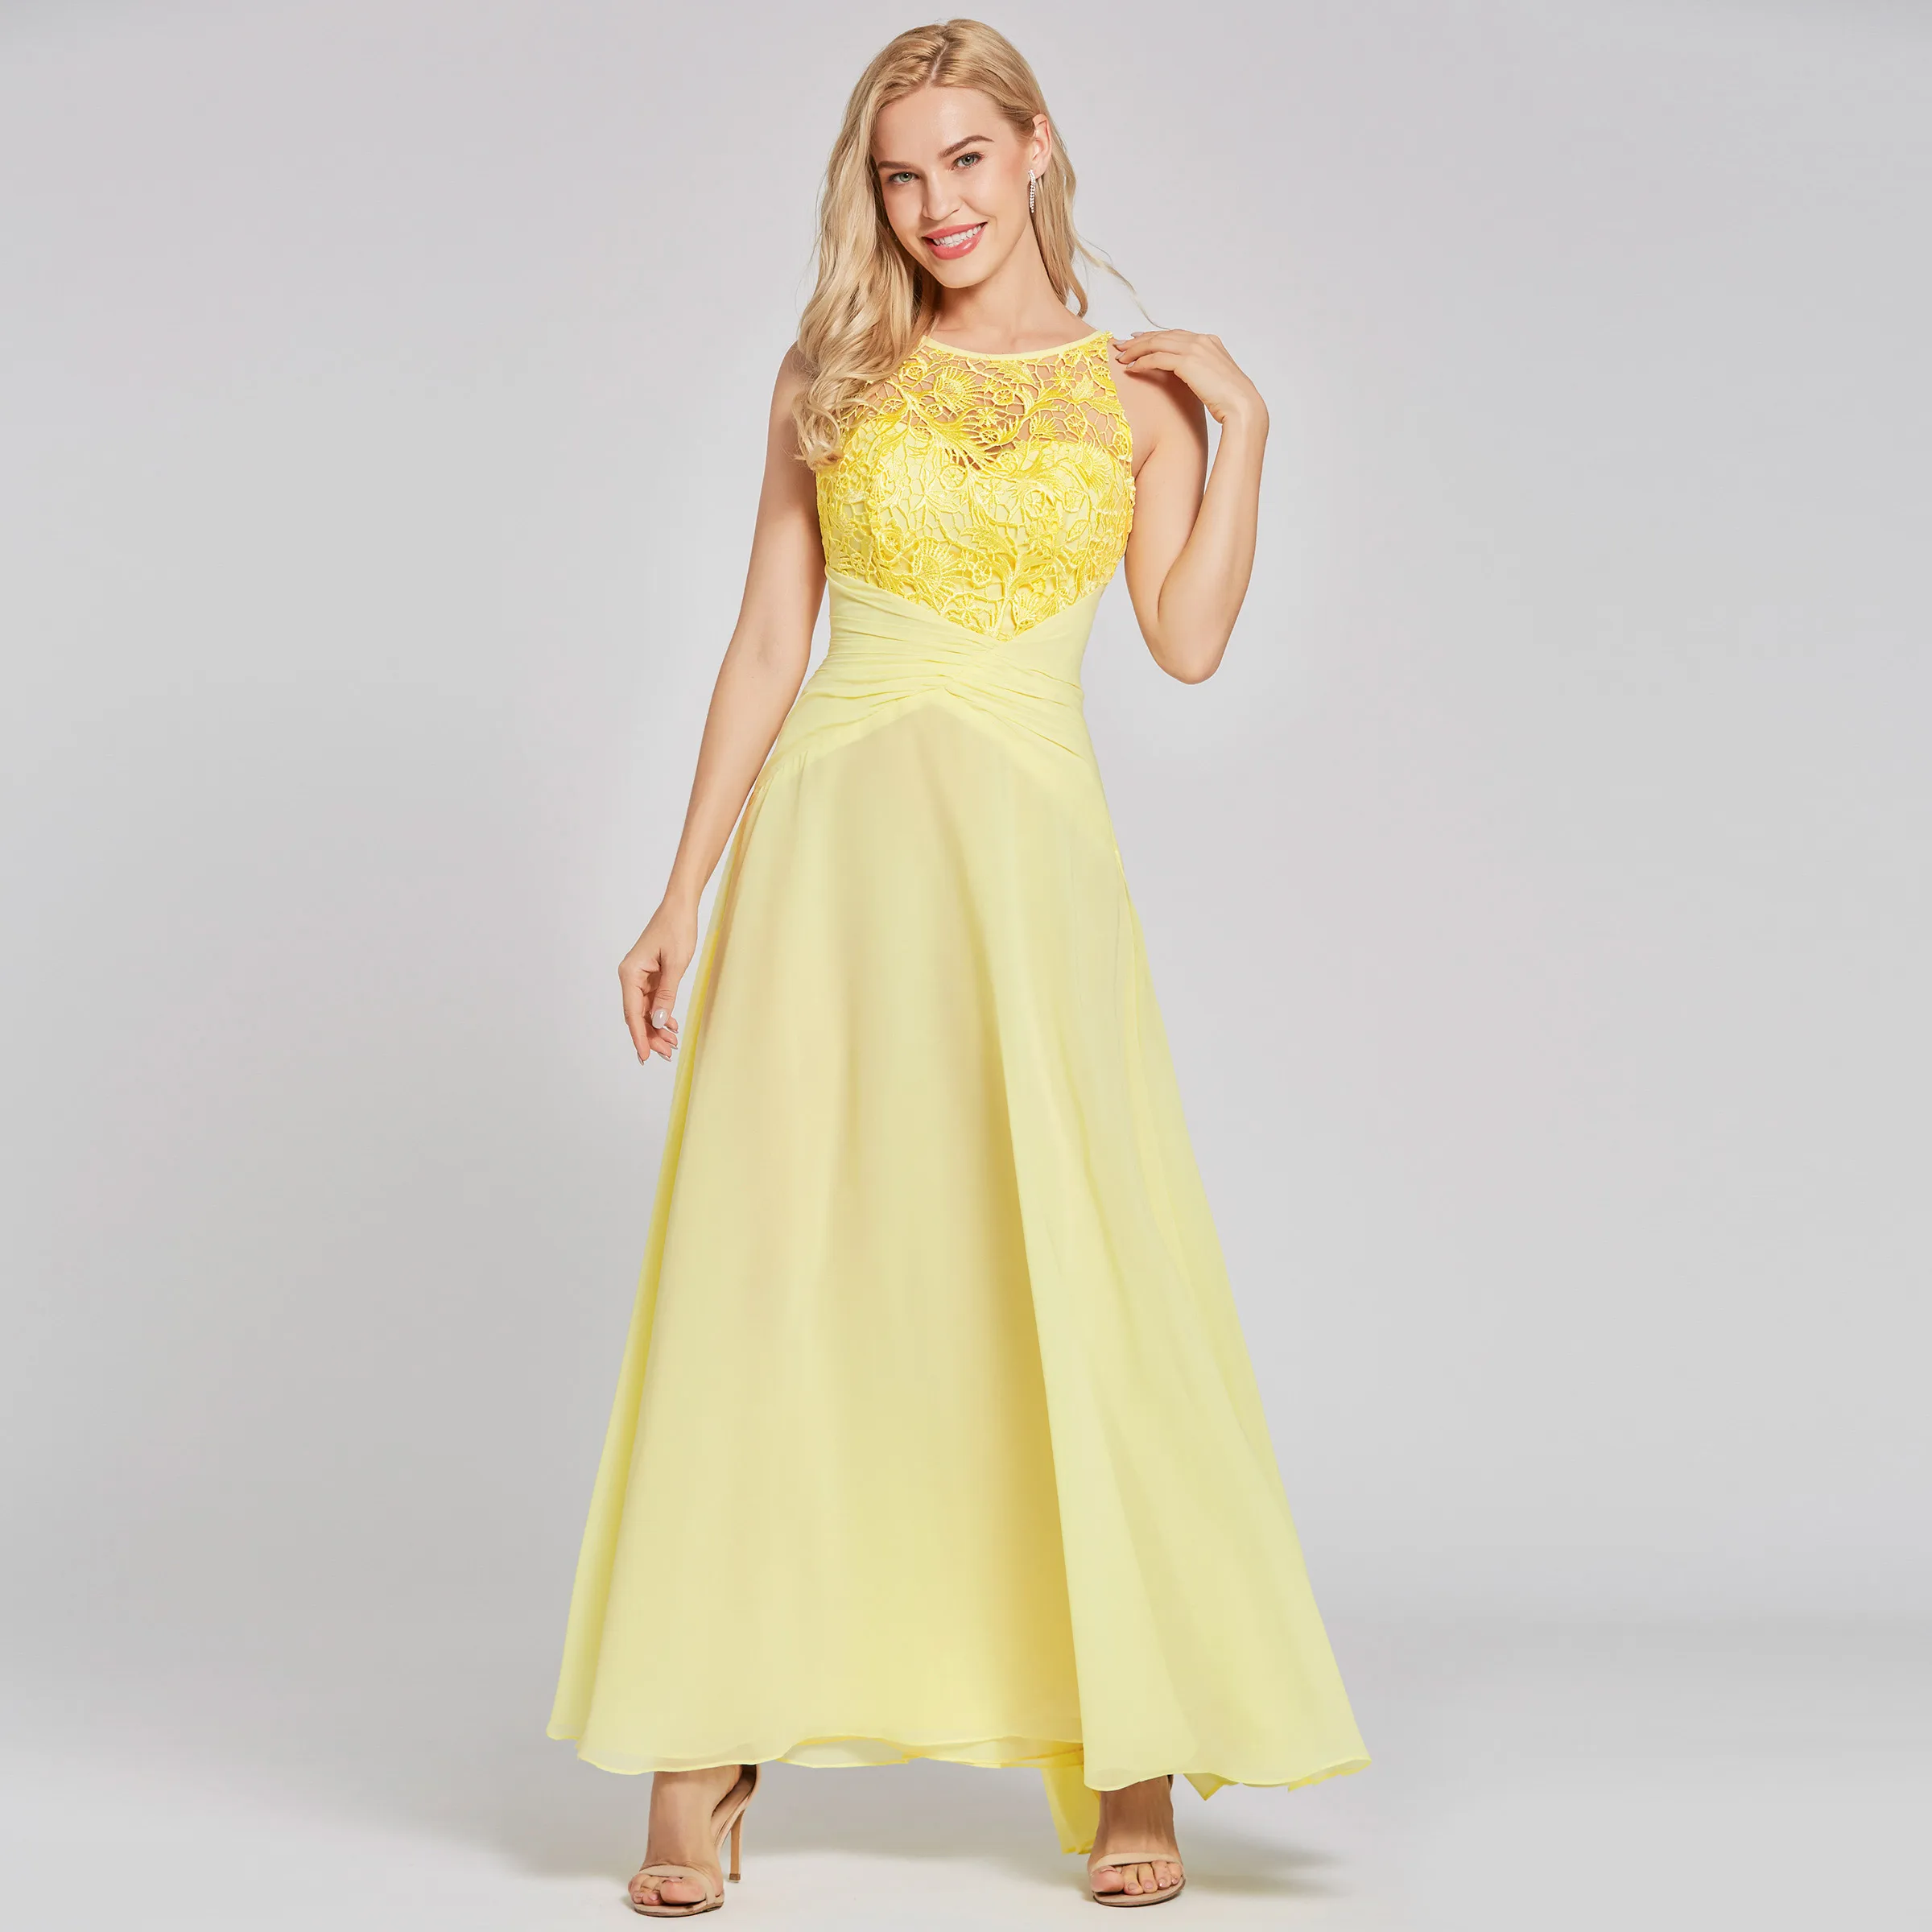 Dressv daffodil длинное вечернее платье, недорогое ТРАПЕЦИЕВИДНОЕ платье без рукавов с глубоким вырезом, свадебное вечернее платье, кружевное вечернее платье es